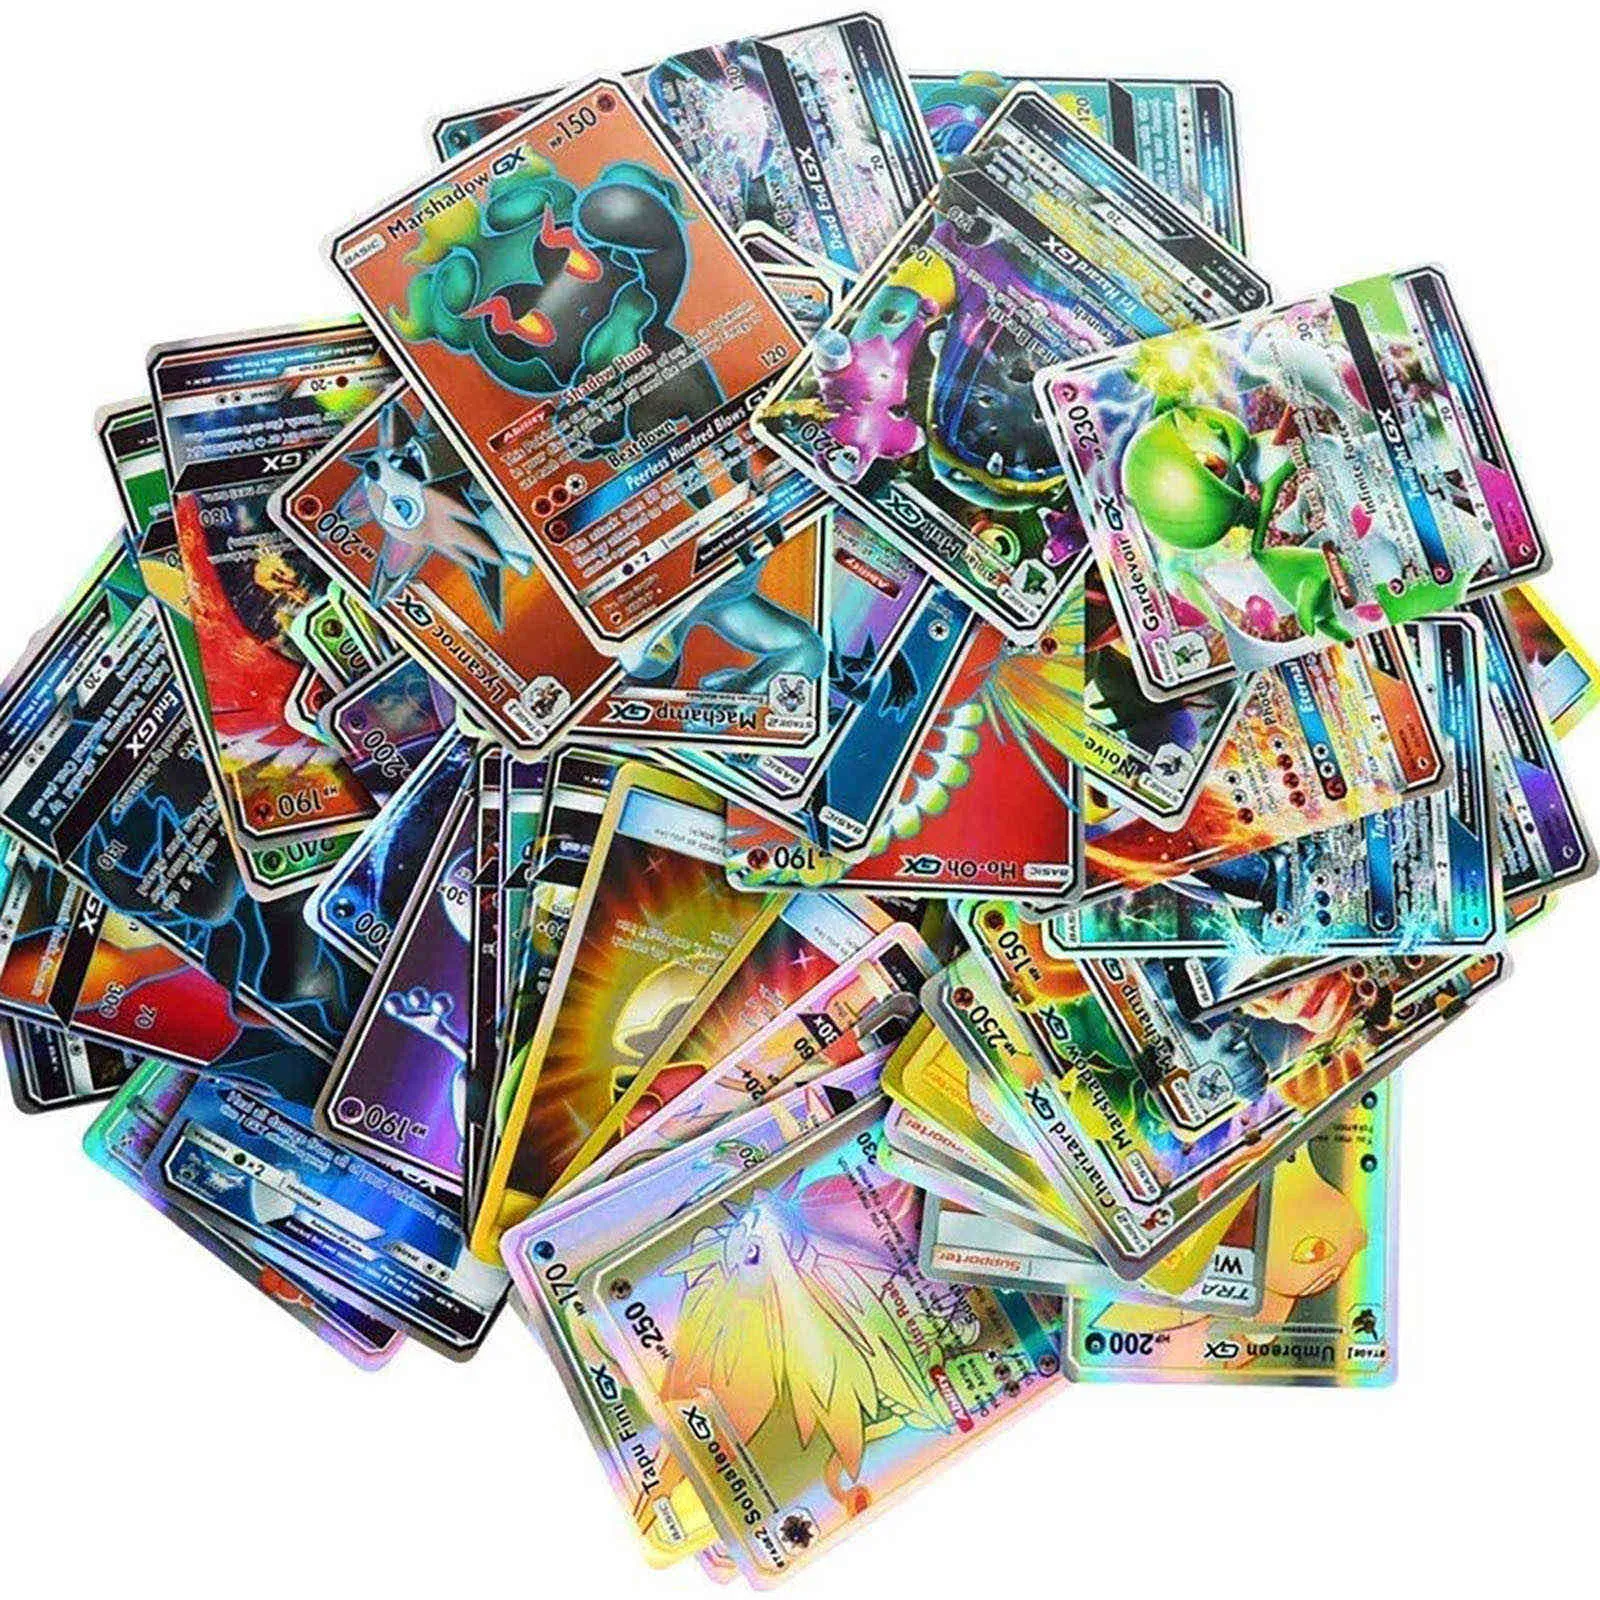 Komplettes Gx-Kartenpaket in französischer Version 60 komplette Megakarten, Spielzeugkarten, Prare-Karten Boite De Games Spielzeugkartenset Cartoon G1125